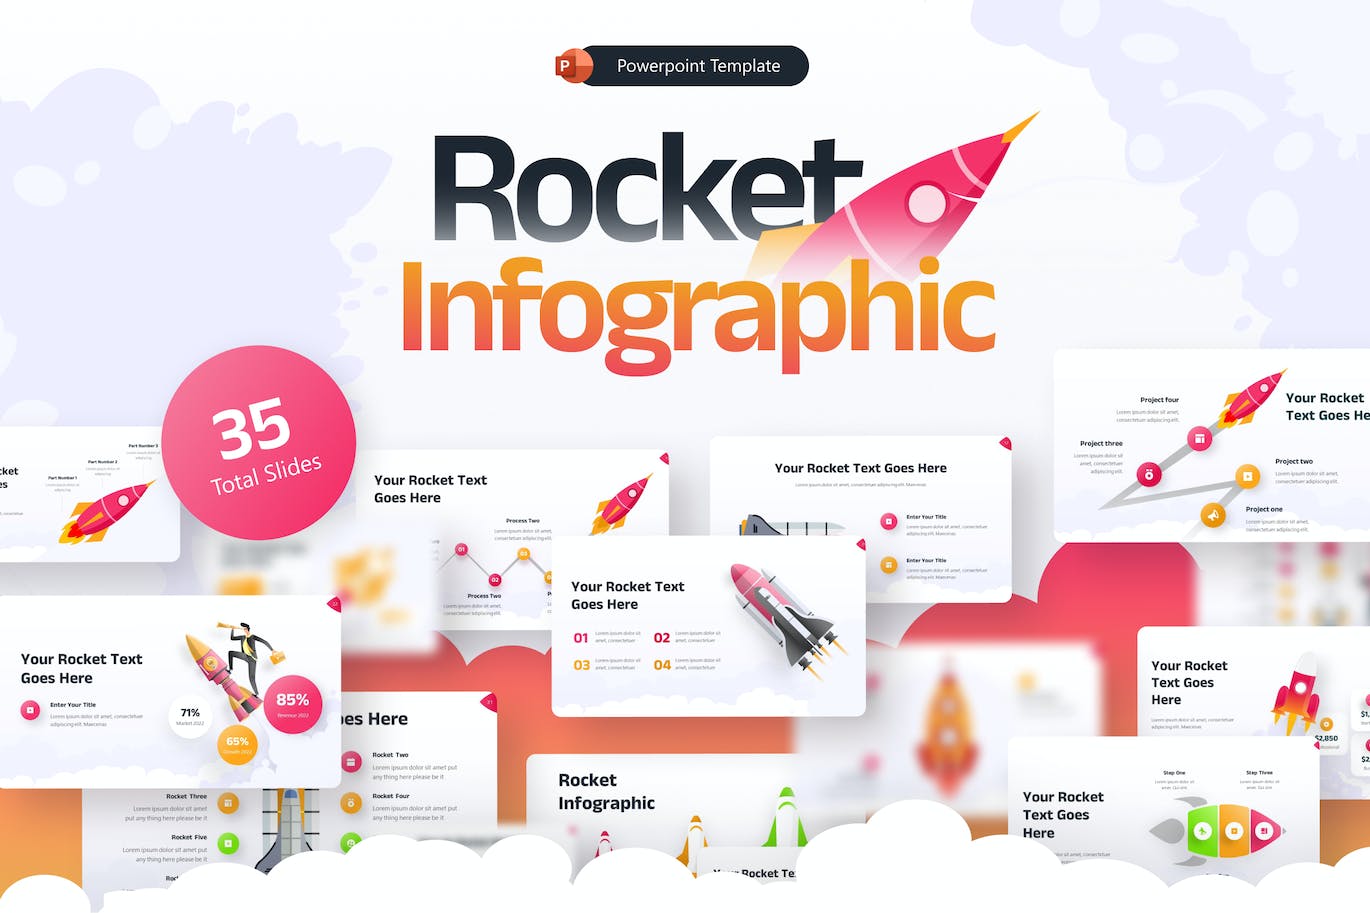 火箭信息图表PPT创意模板 Rocket Infographic Creative PowerPoint Template 幻灯图表 第1张